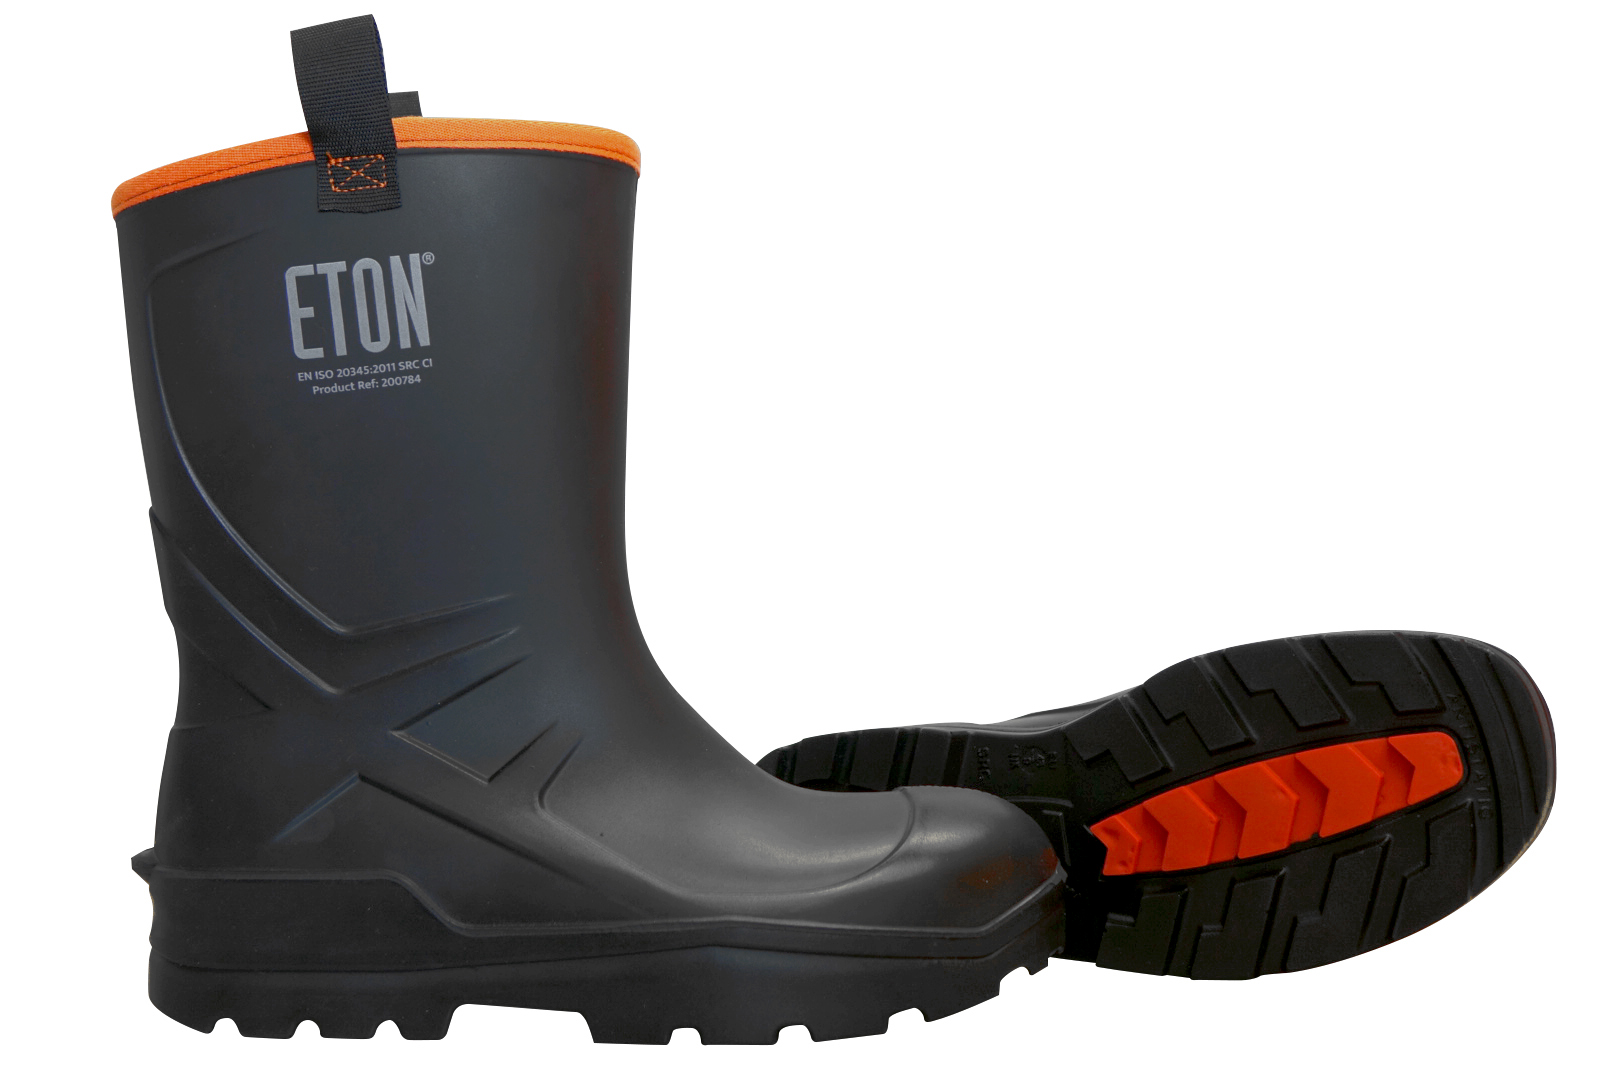 ETON DuraBoot Rigger Full Safety Boot - Black, Size 13